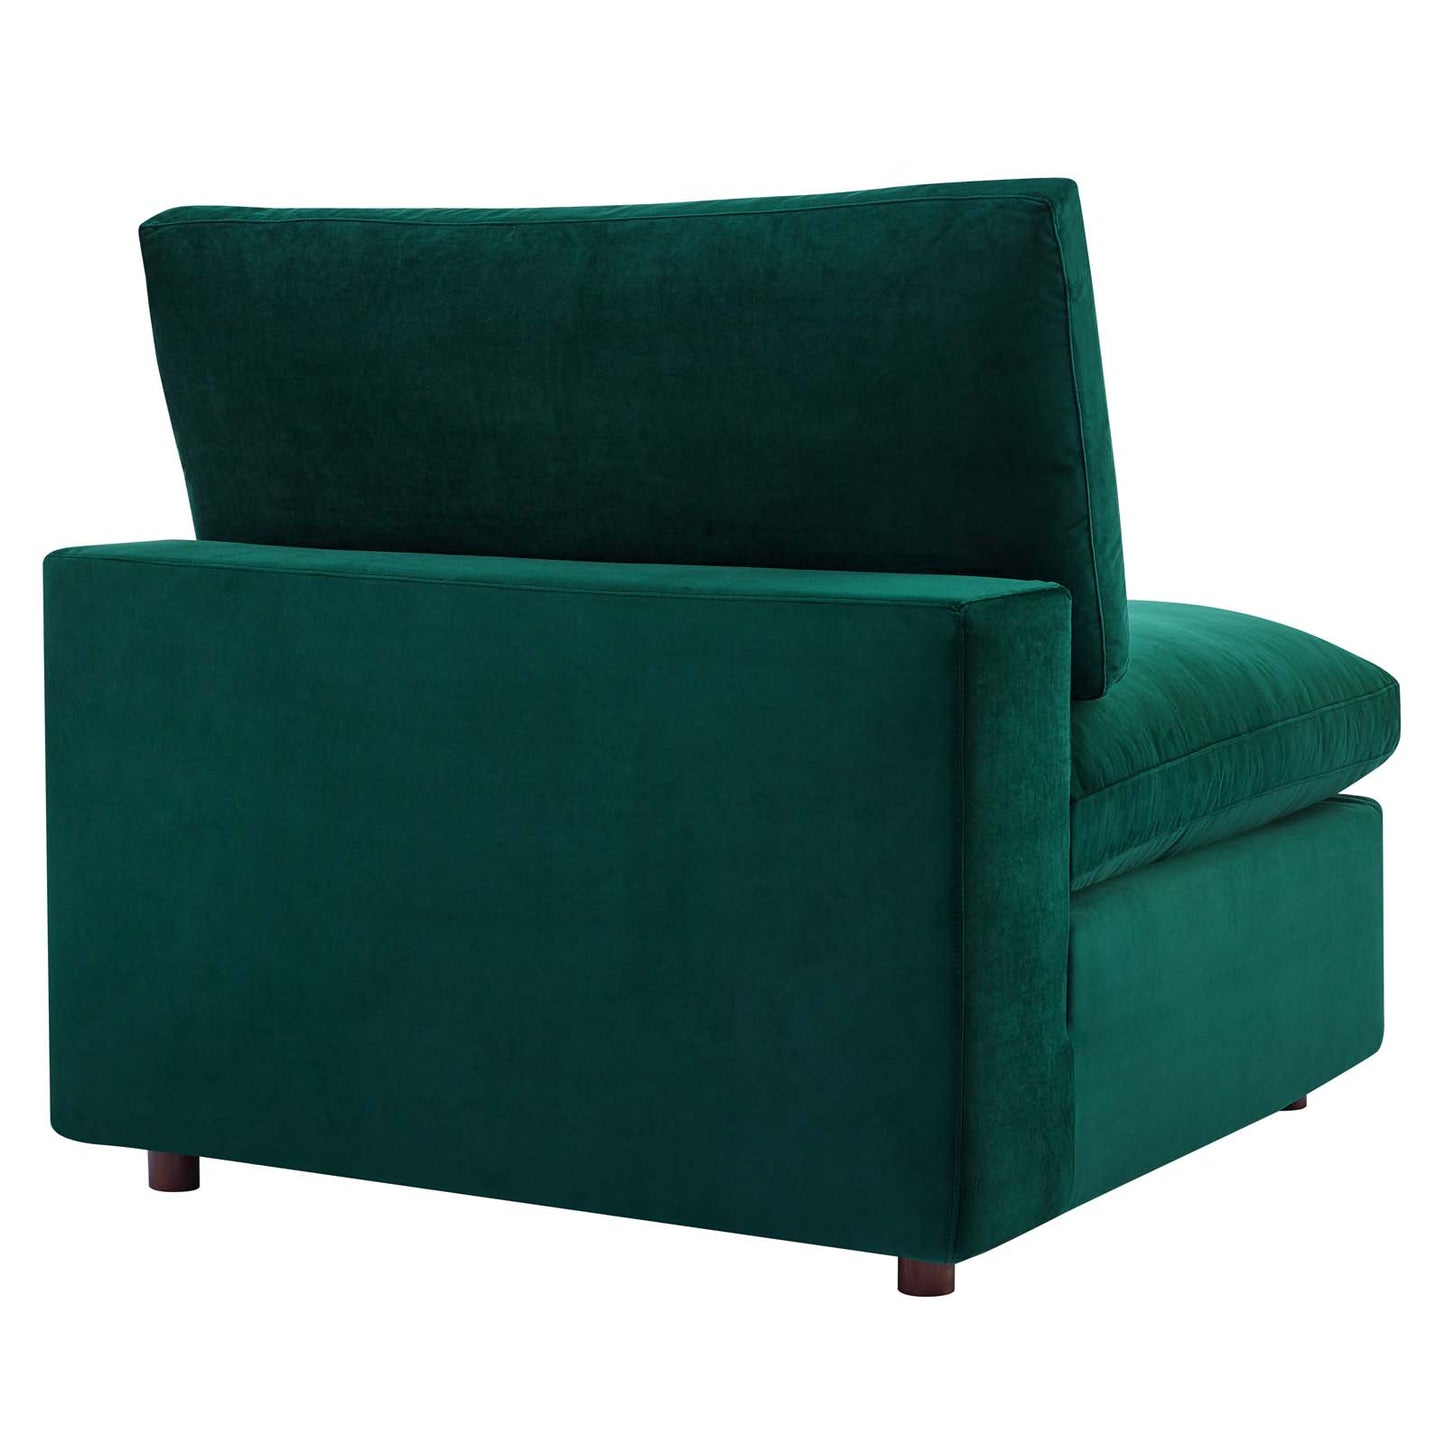 Commix Down Filled Overstuffed Performance Velvet Armless Chair Green EEI-4367-GRN